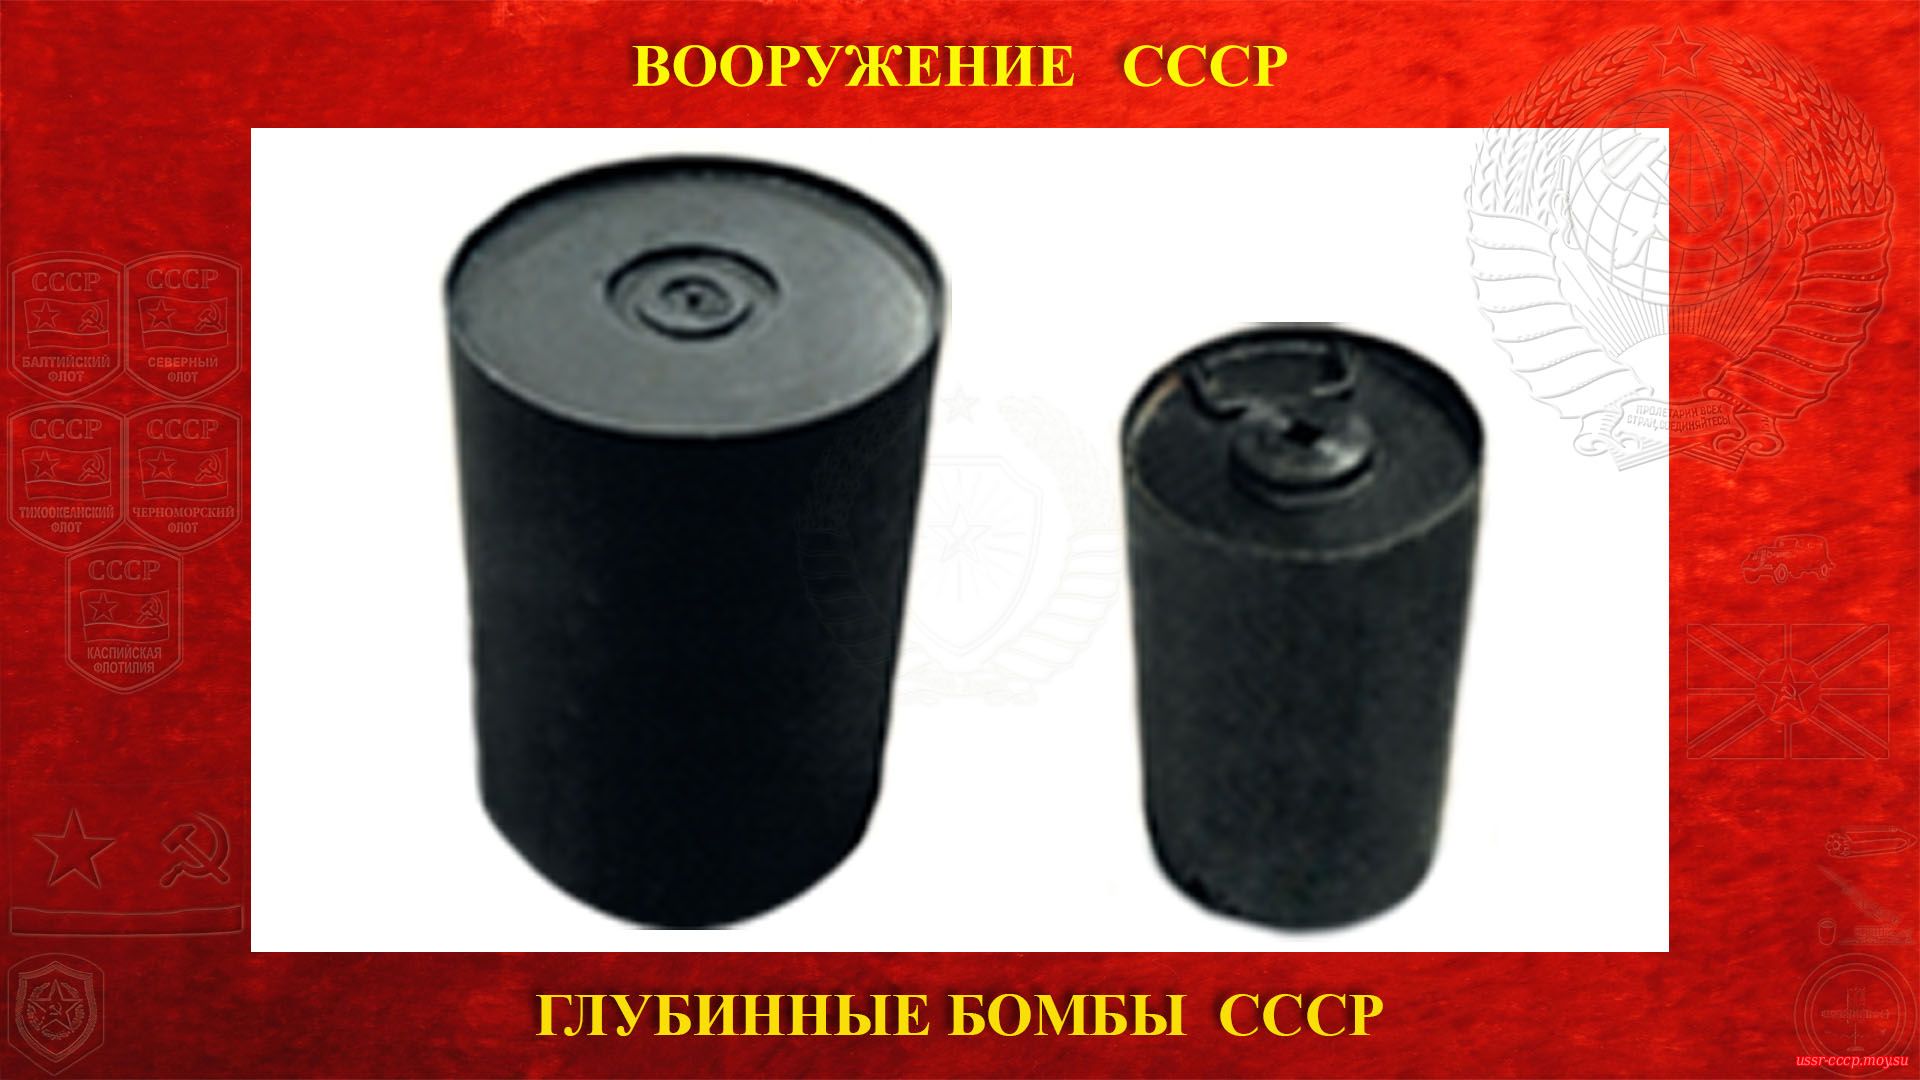 Глубинные бомбы СССР